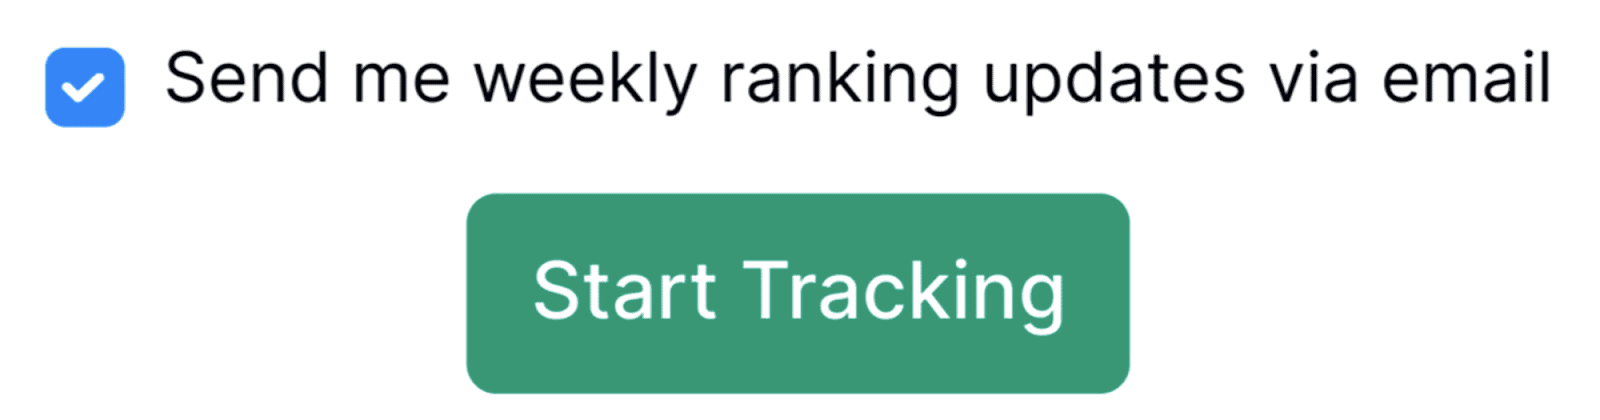 Send me weekly ranking updates via email